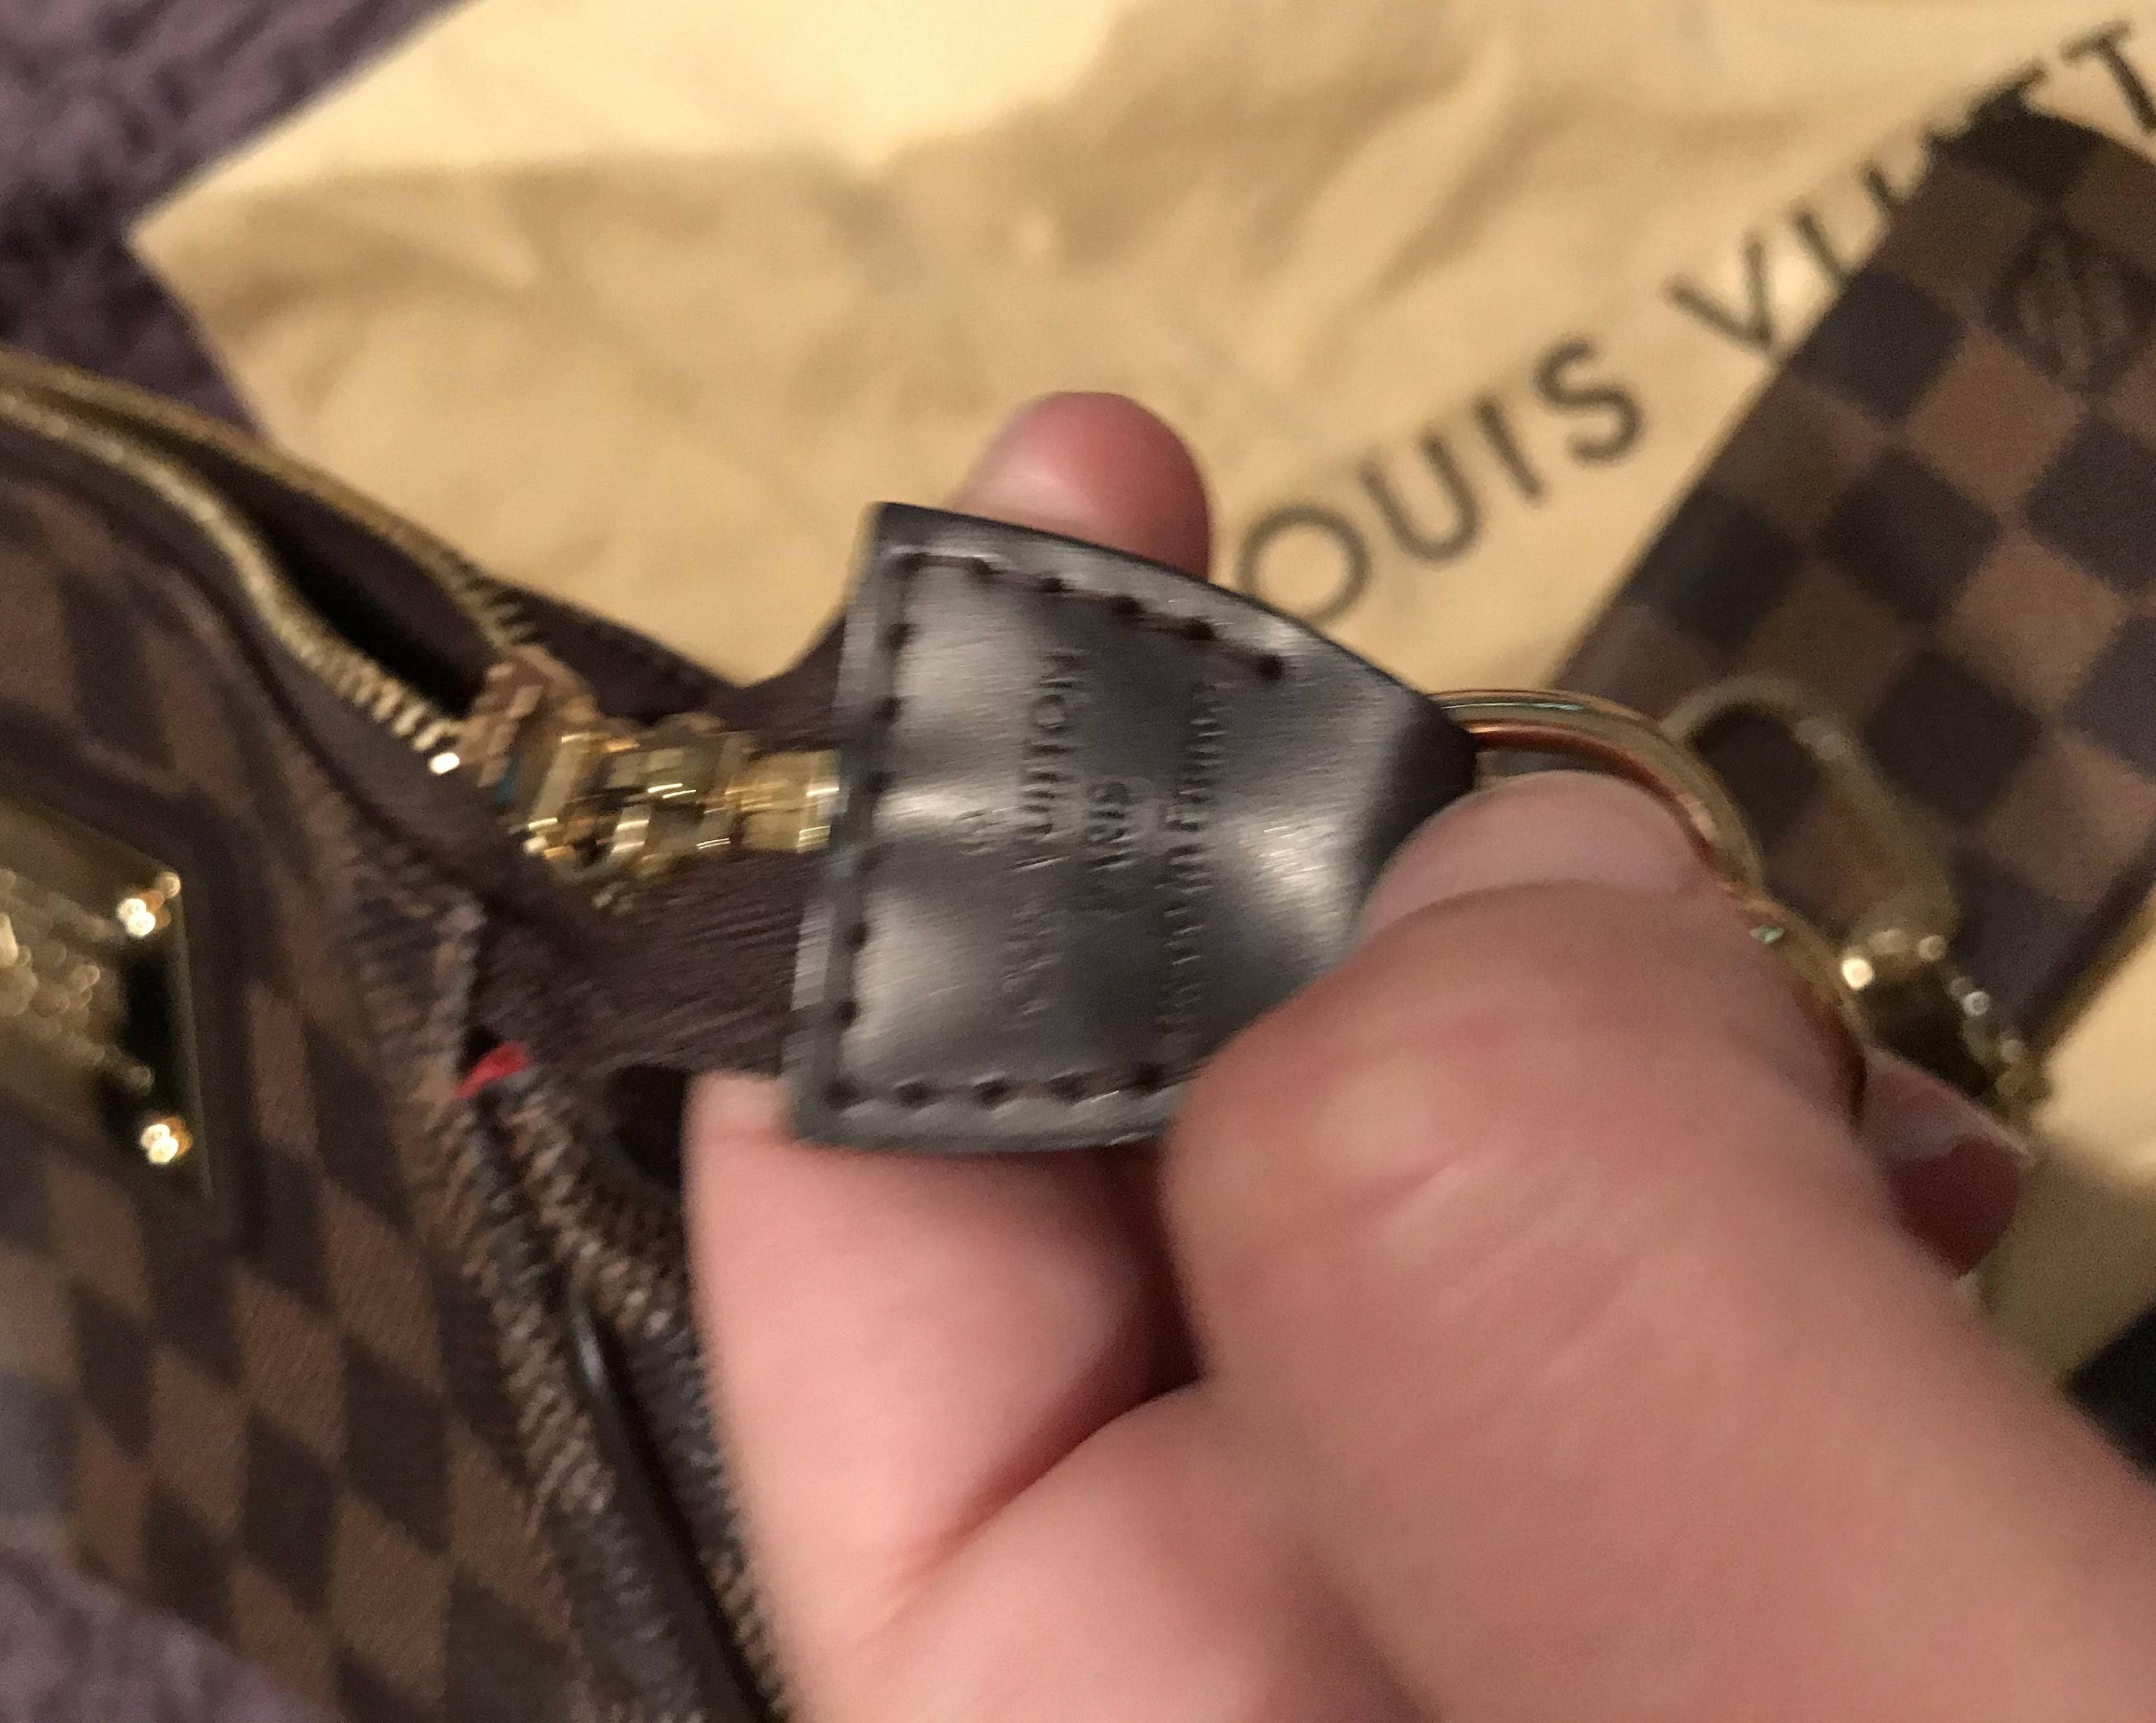 Eva cloth clutch bag Louis Vuitton Brown in Cloth - 35418093